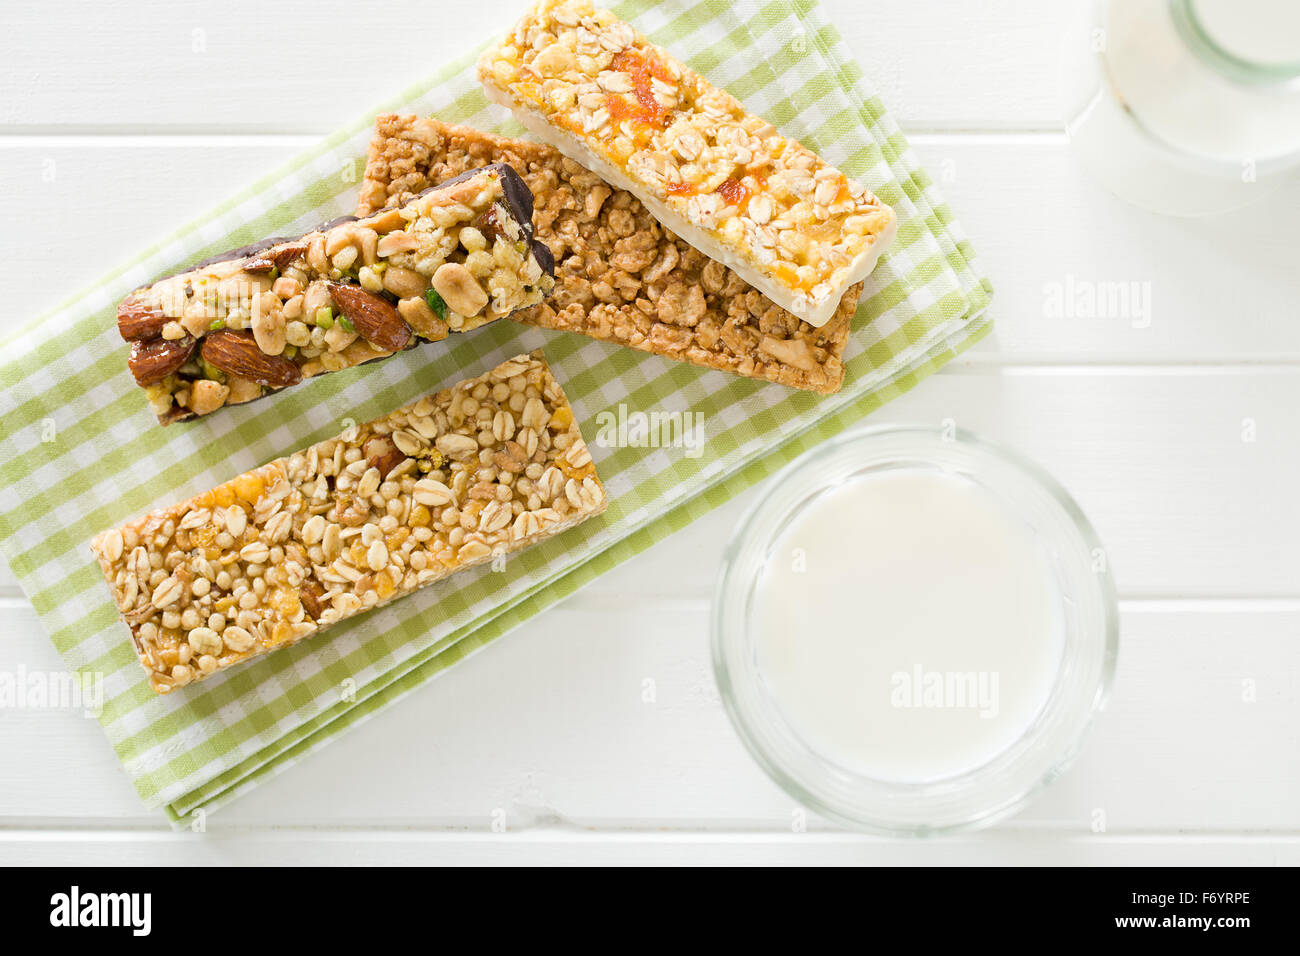 muesli bar and milk on kitchen table Stock Photo